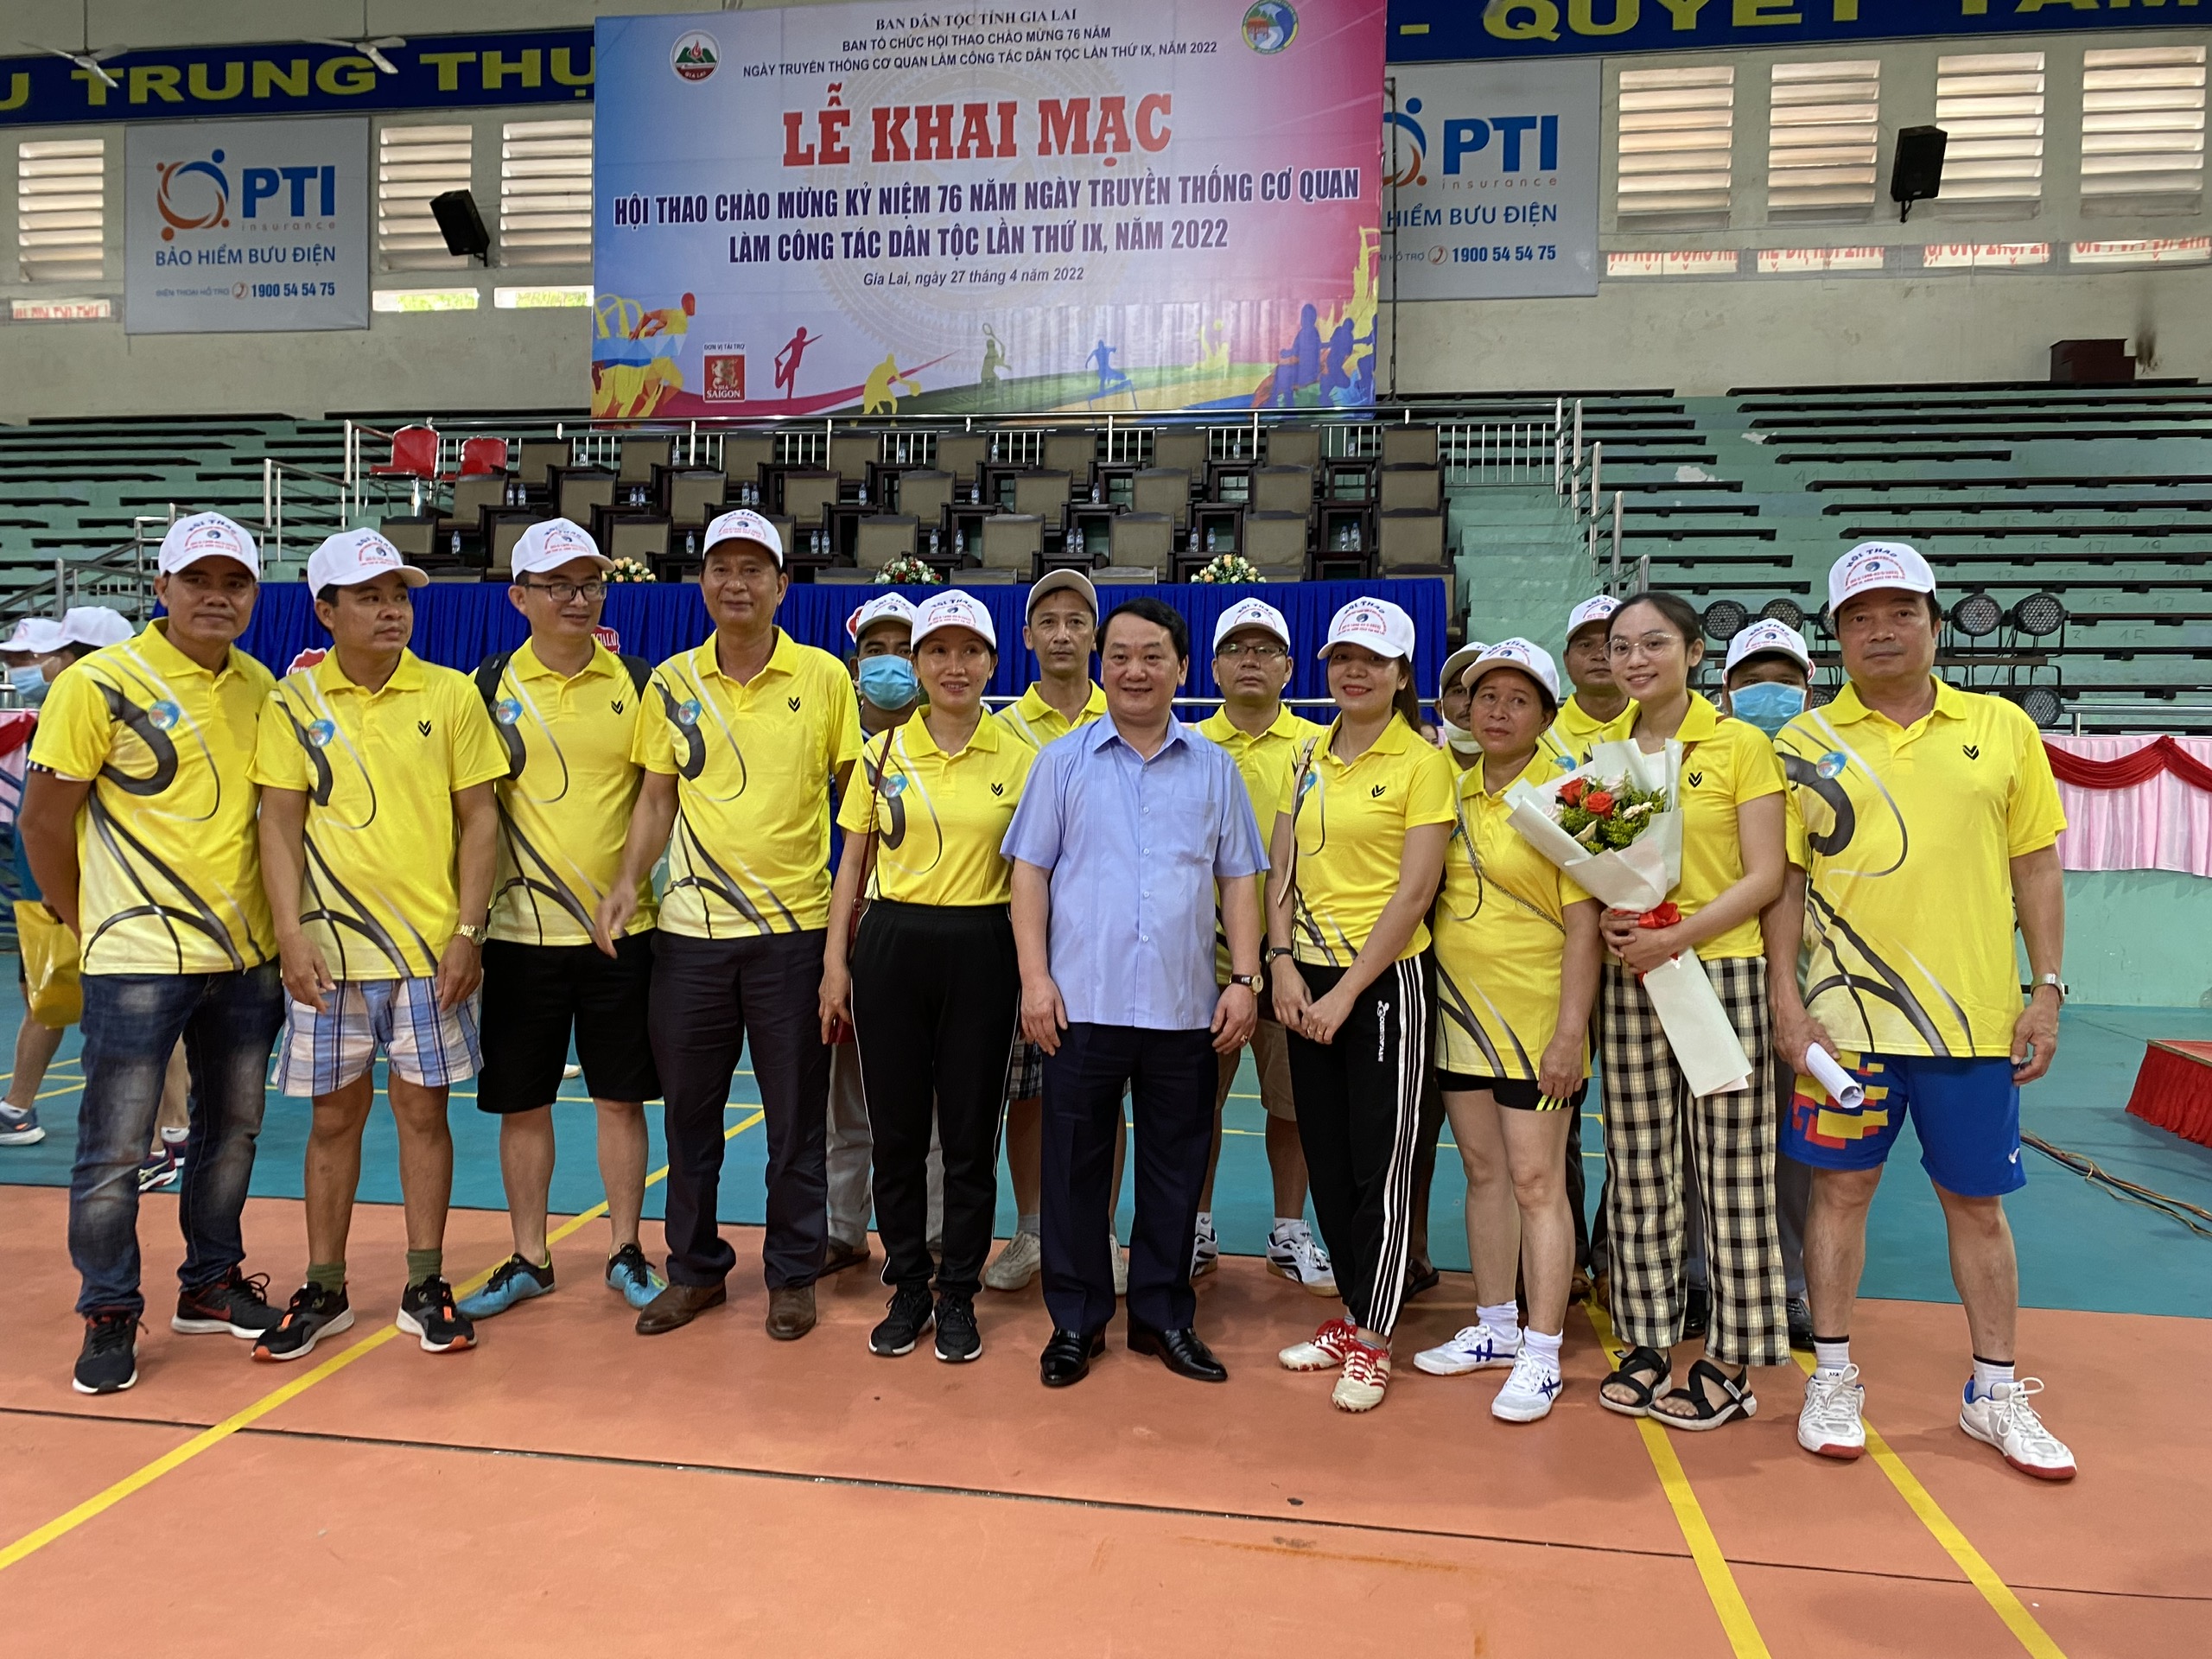 Quảng Ngãi ban hành Kế hoạch tổ chức Hội thao chào mừng kỷ niệm 77 năm ngày truyền thống Cơ quan công tác dân tộc lần thứ X năm 2023